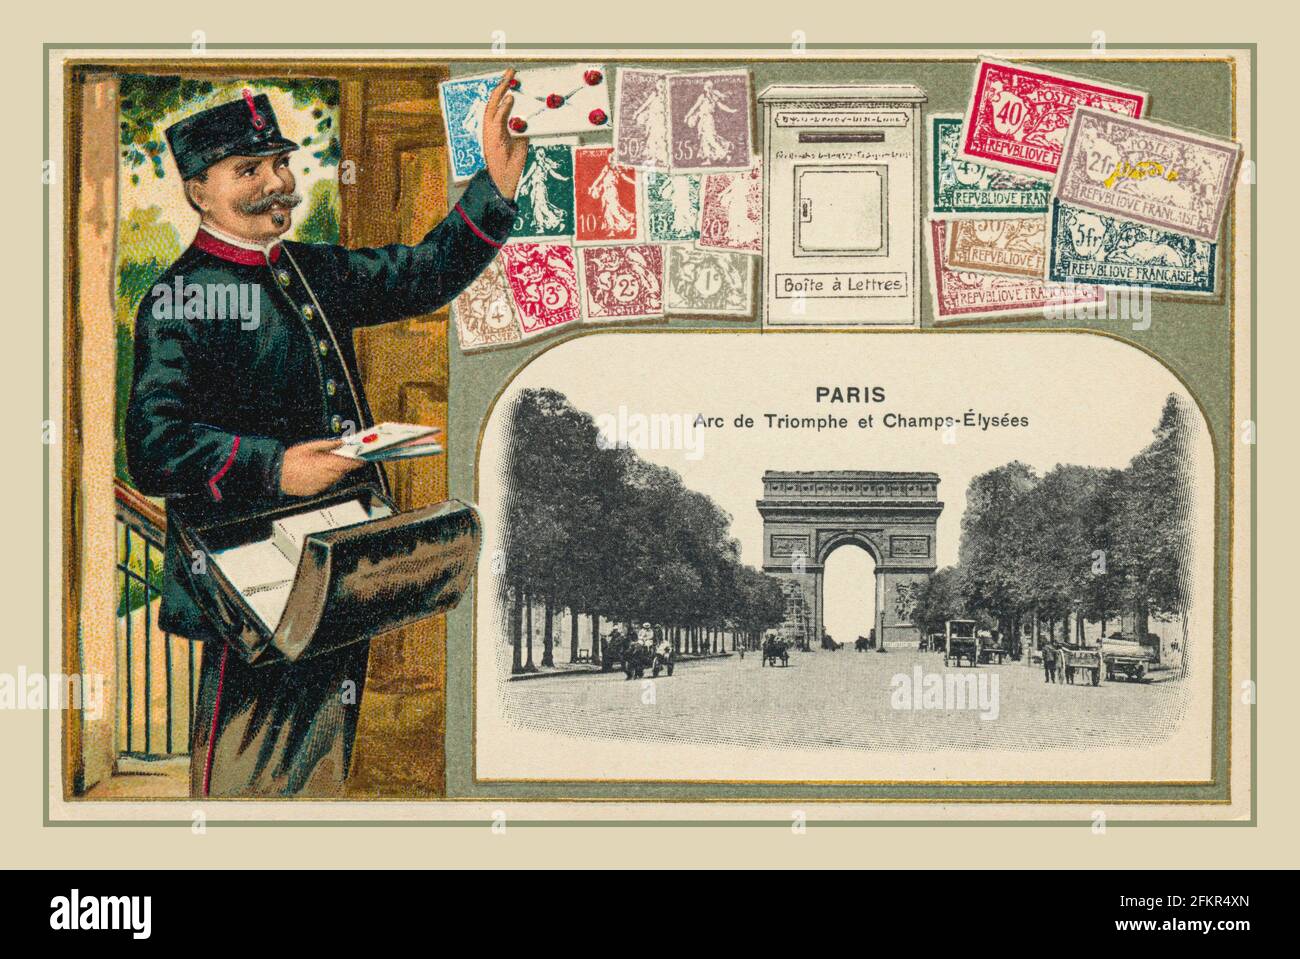 Carte postale de voyage française vintage 1890 faisant la promotion de Paris avec le L'Arc de Triomphe et la livraison du Service postal français Postman Avec timbres et boîte aux lettres France Banque D'Images